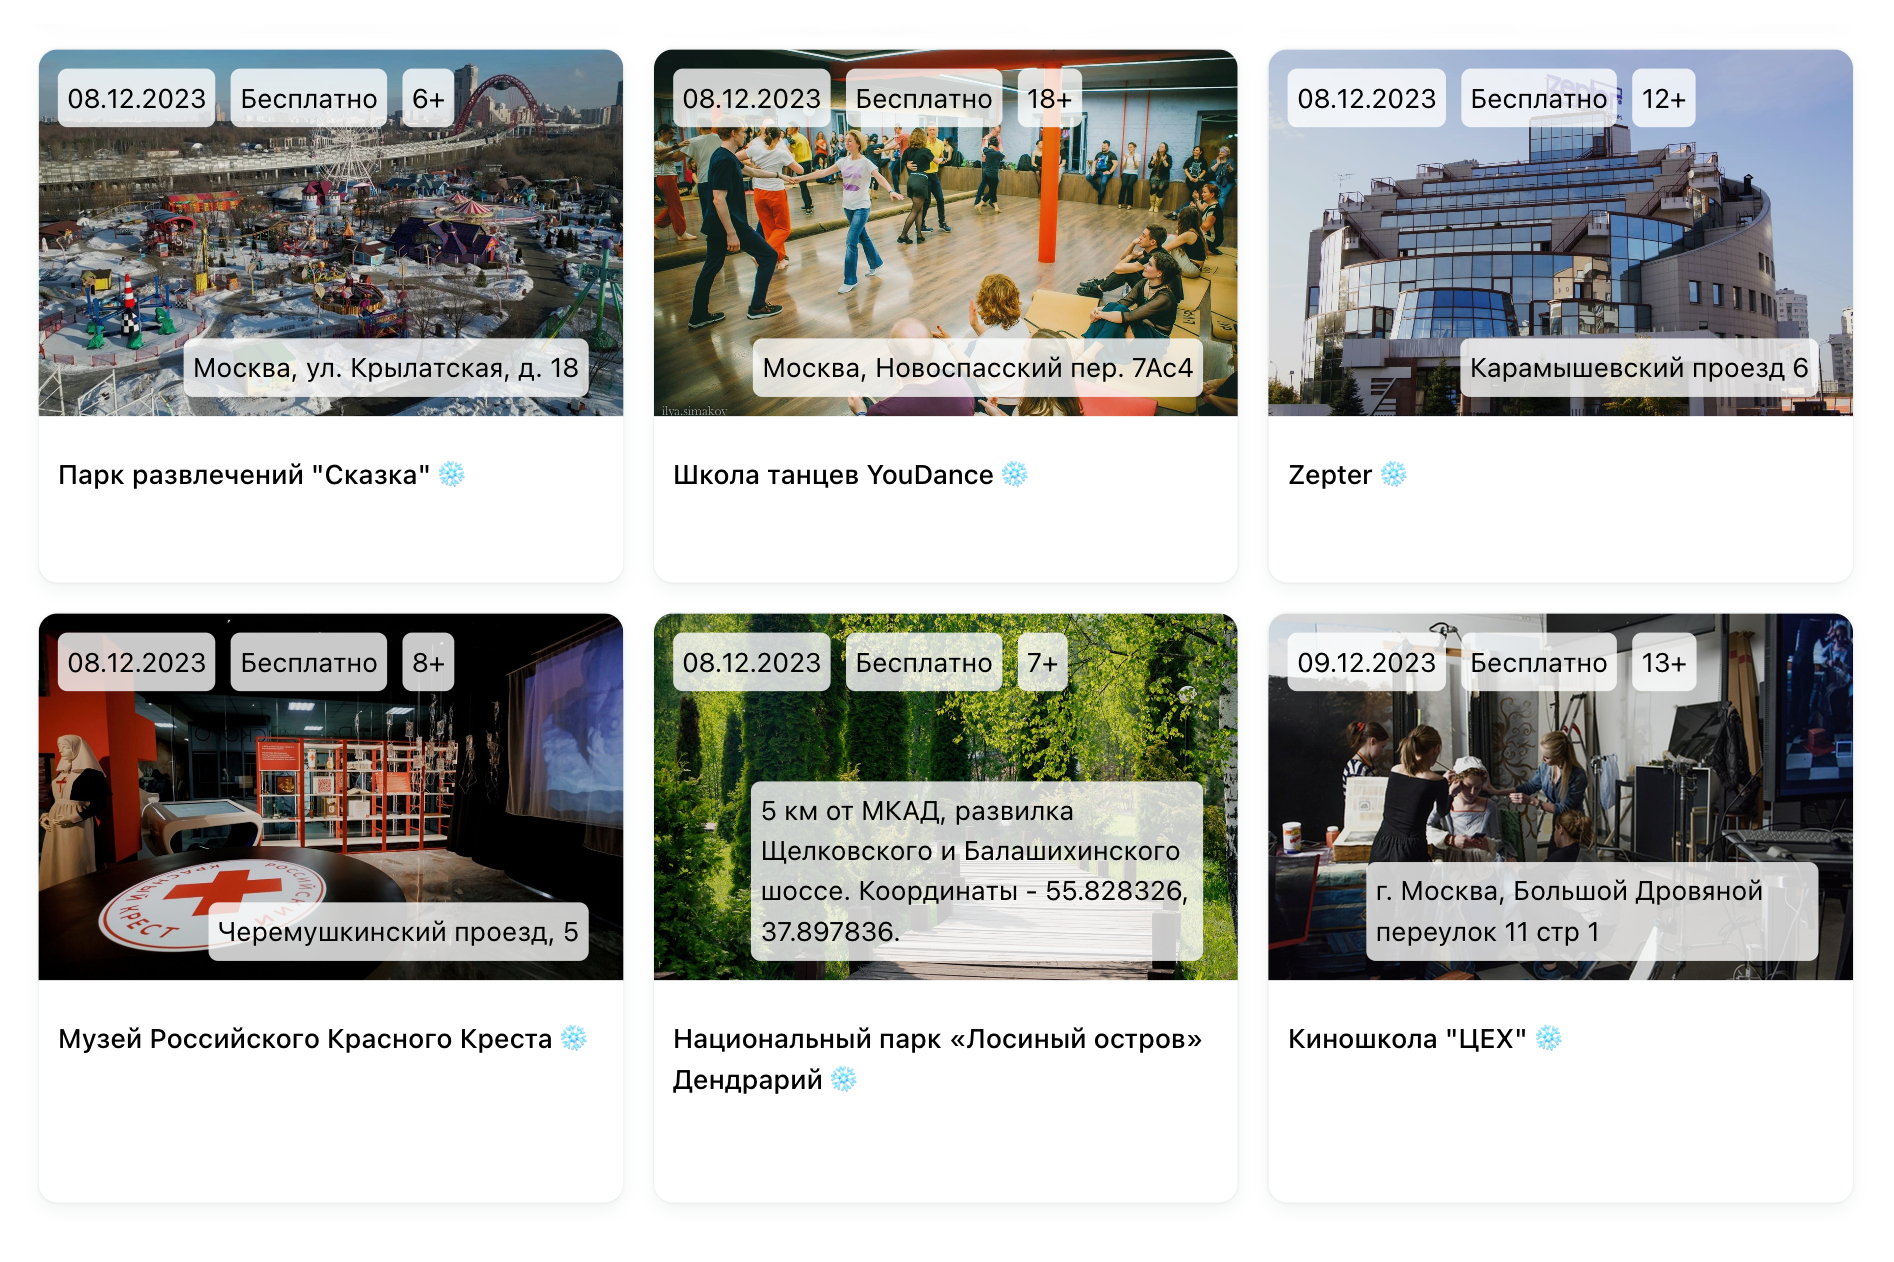 На сайте проекта бывают анонсы квизов и лекций. Источник: turniketovnet.ru